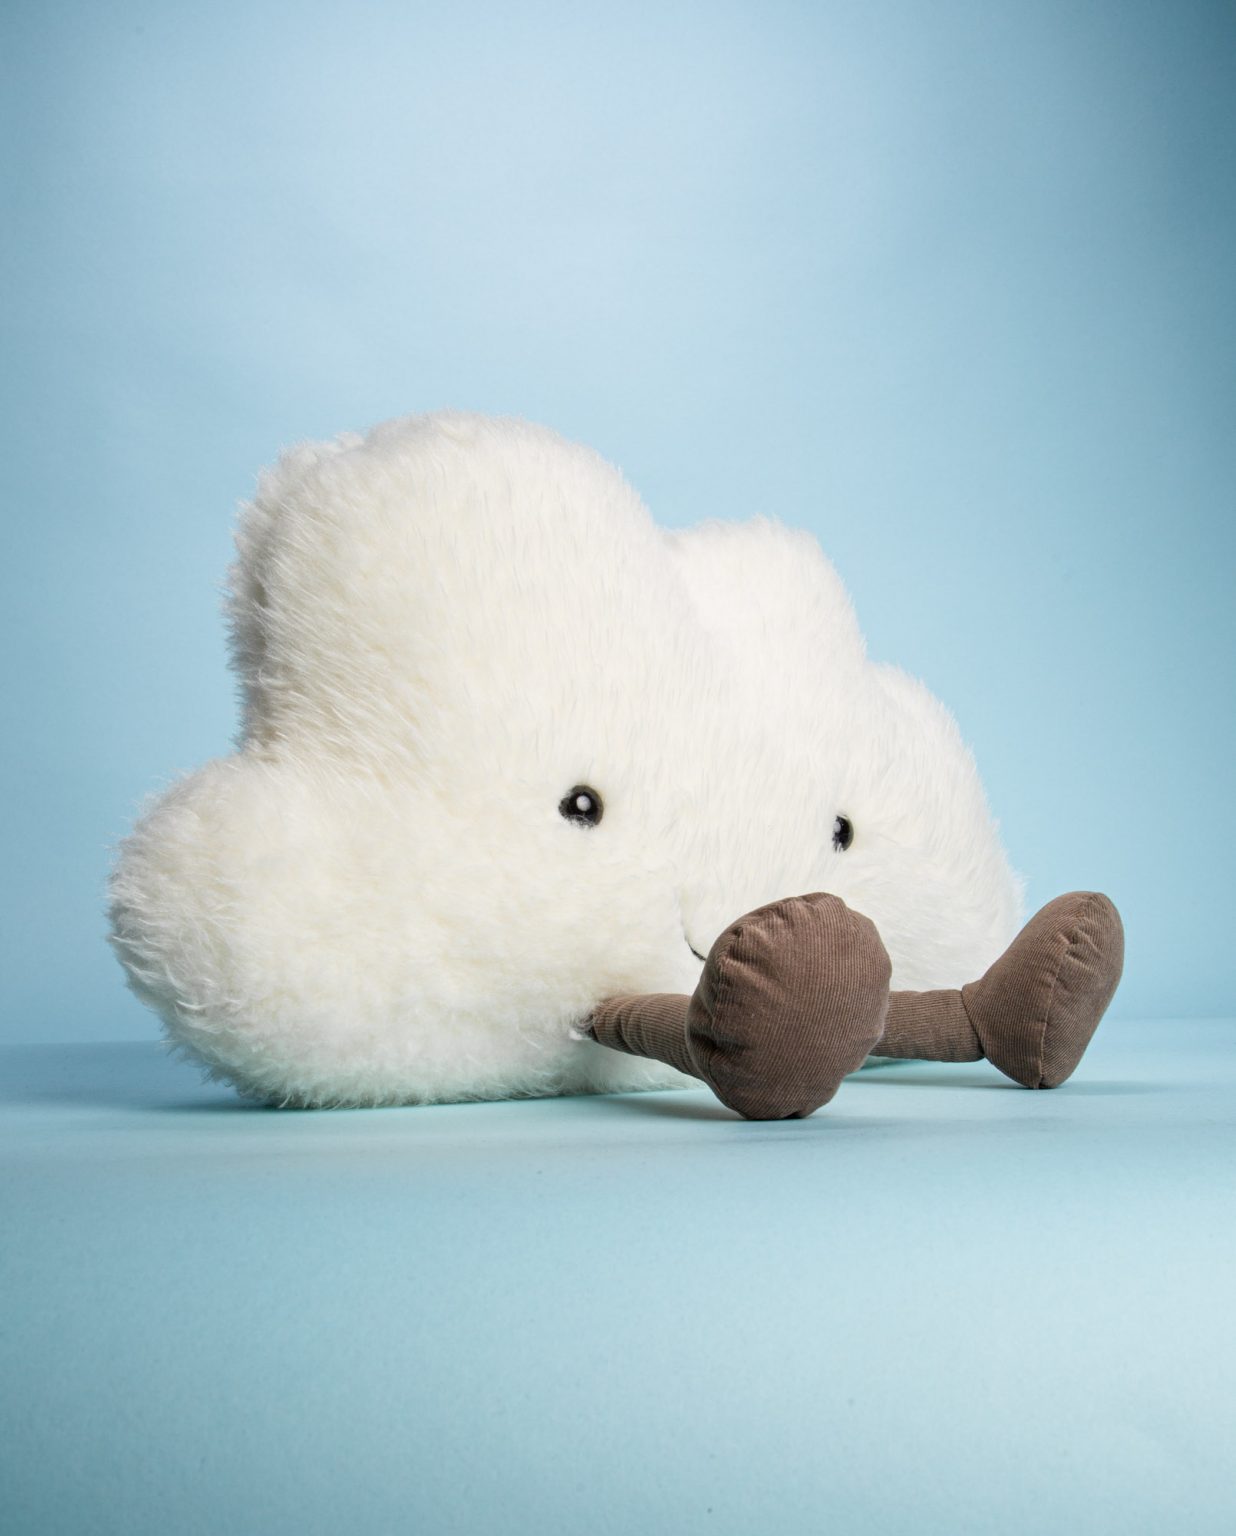 Fluffy cloud soft toy gift - Send a Cuddly